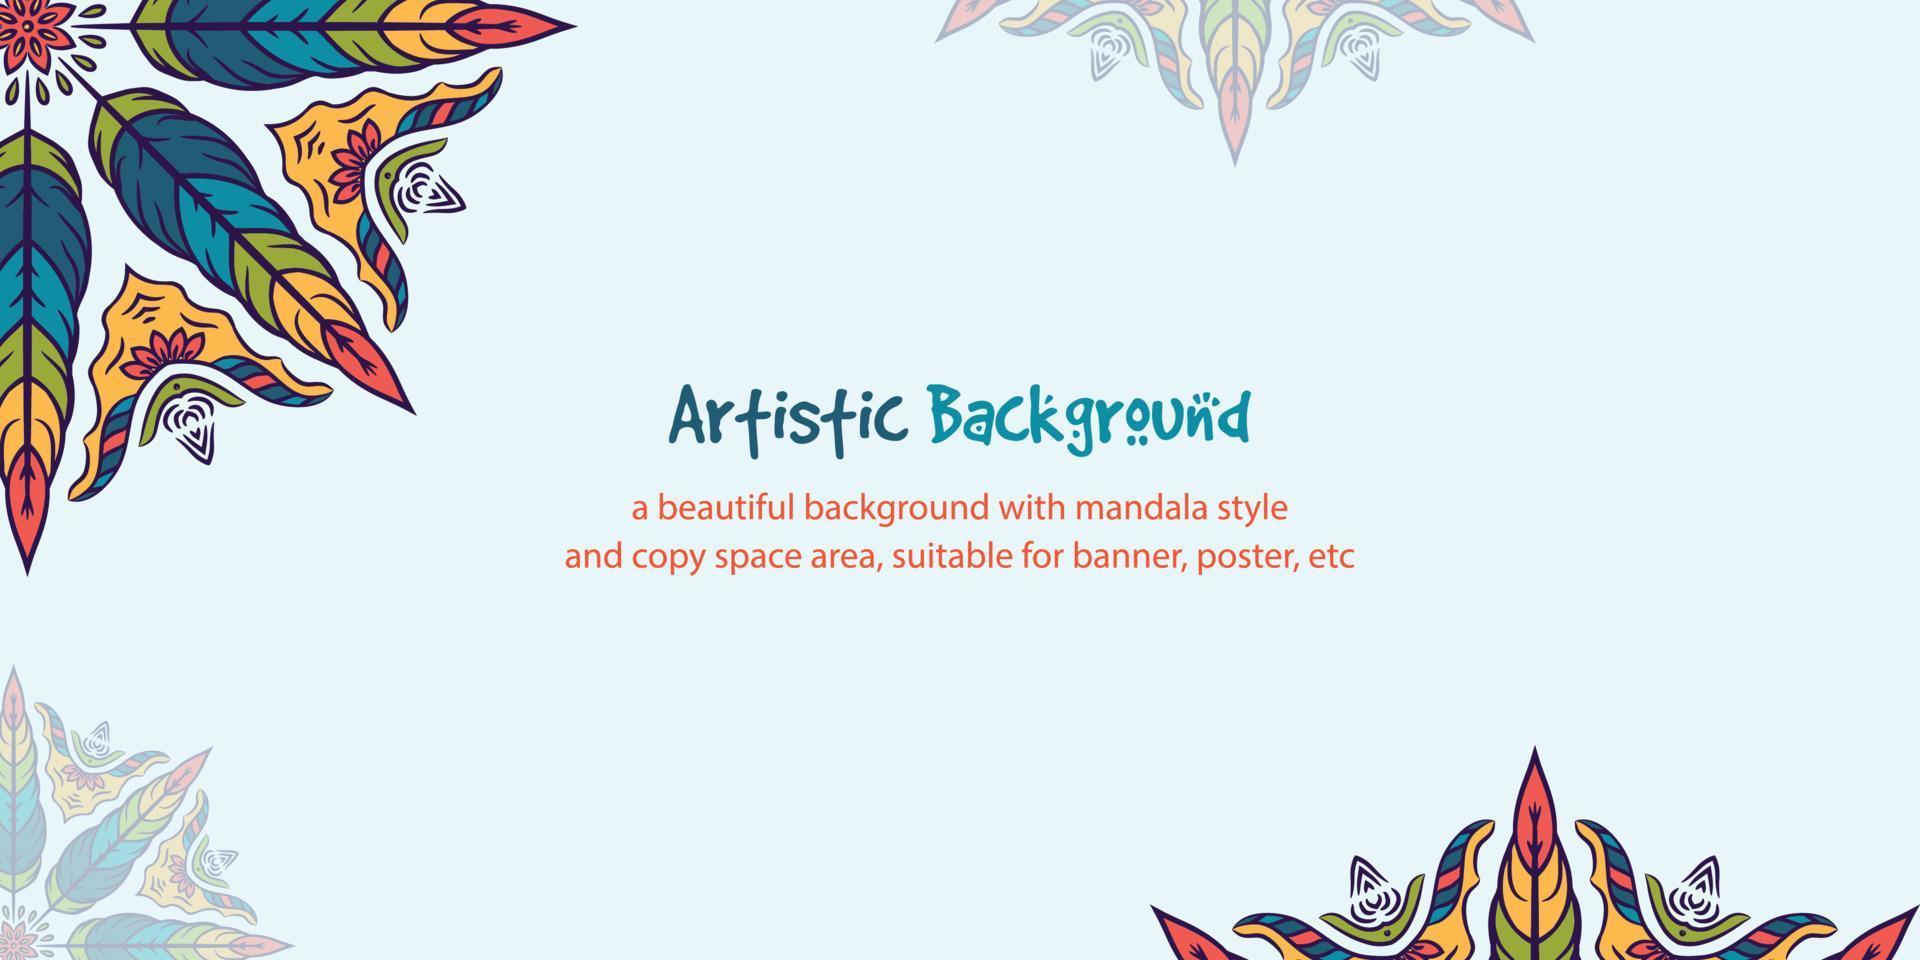 Vektor Illustration von schön Mandala Stil Hintergrund mit Kopieren Raum Bereich. geeignet zum Poster, Banner, Karte, Netz Hintergrund, usw